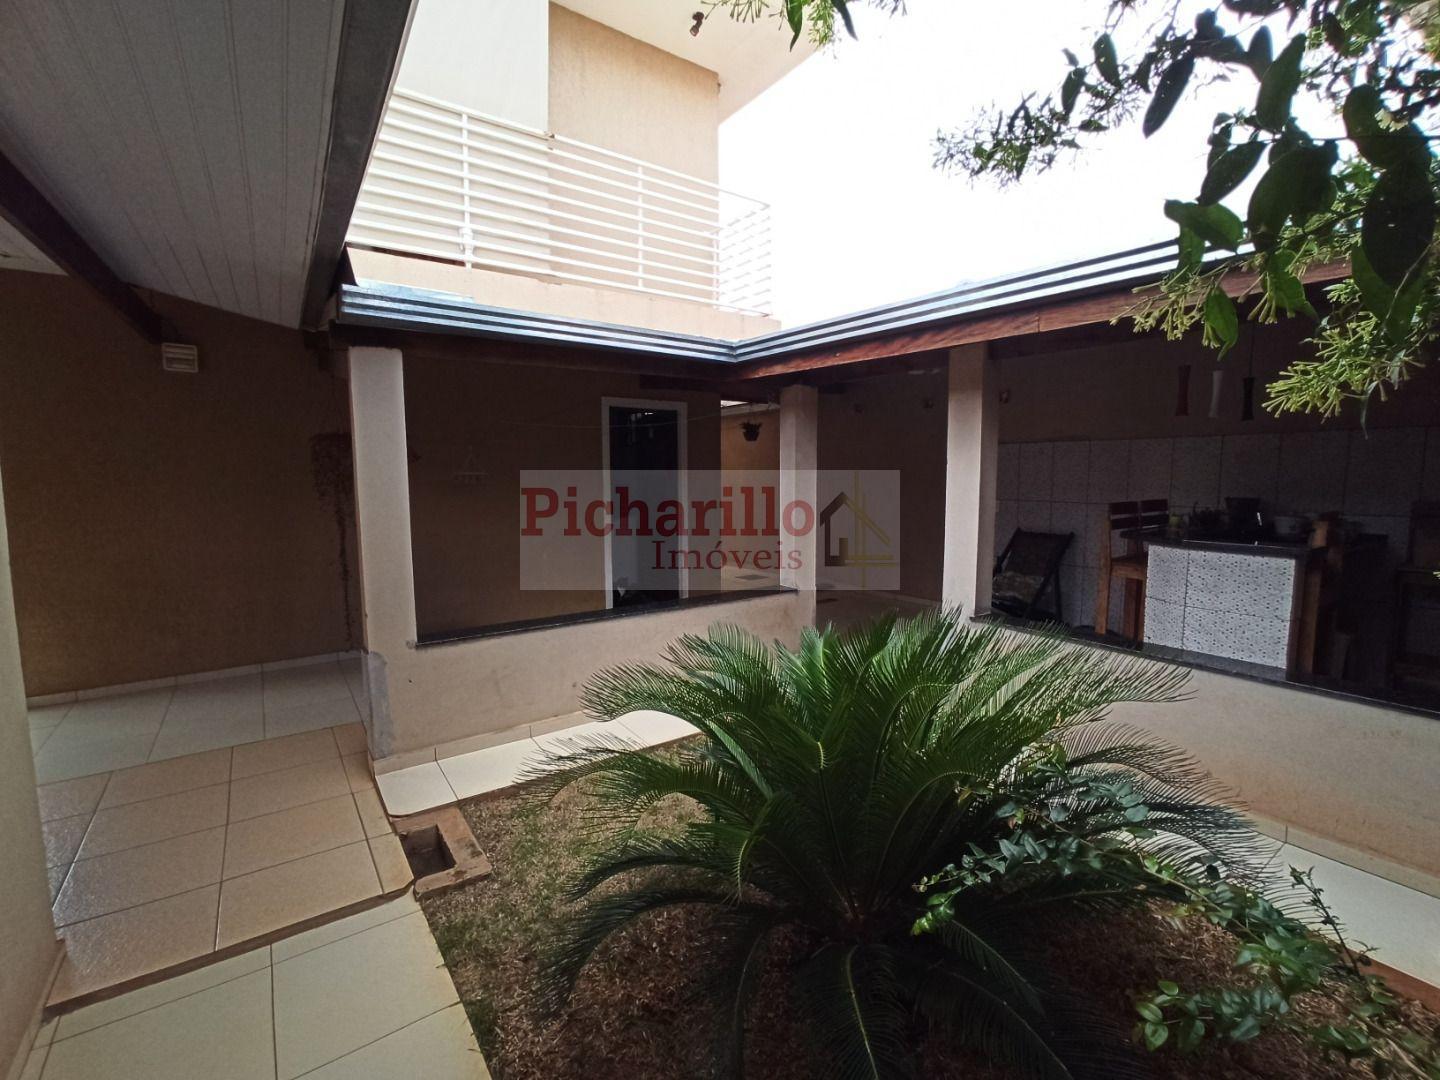 Casa com 4 dormitórios à venda, área constr. 258 m² Sobrado com varanda no Parque Fehr - São Carlos/SP